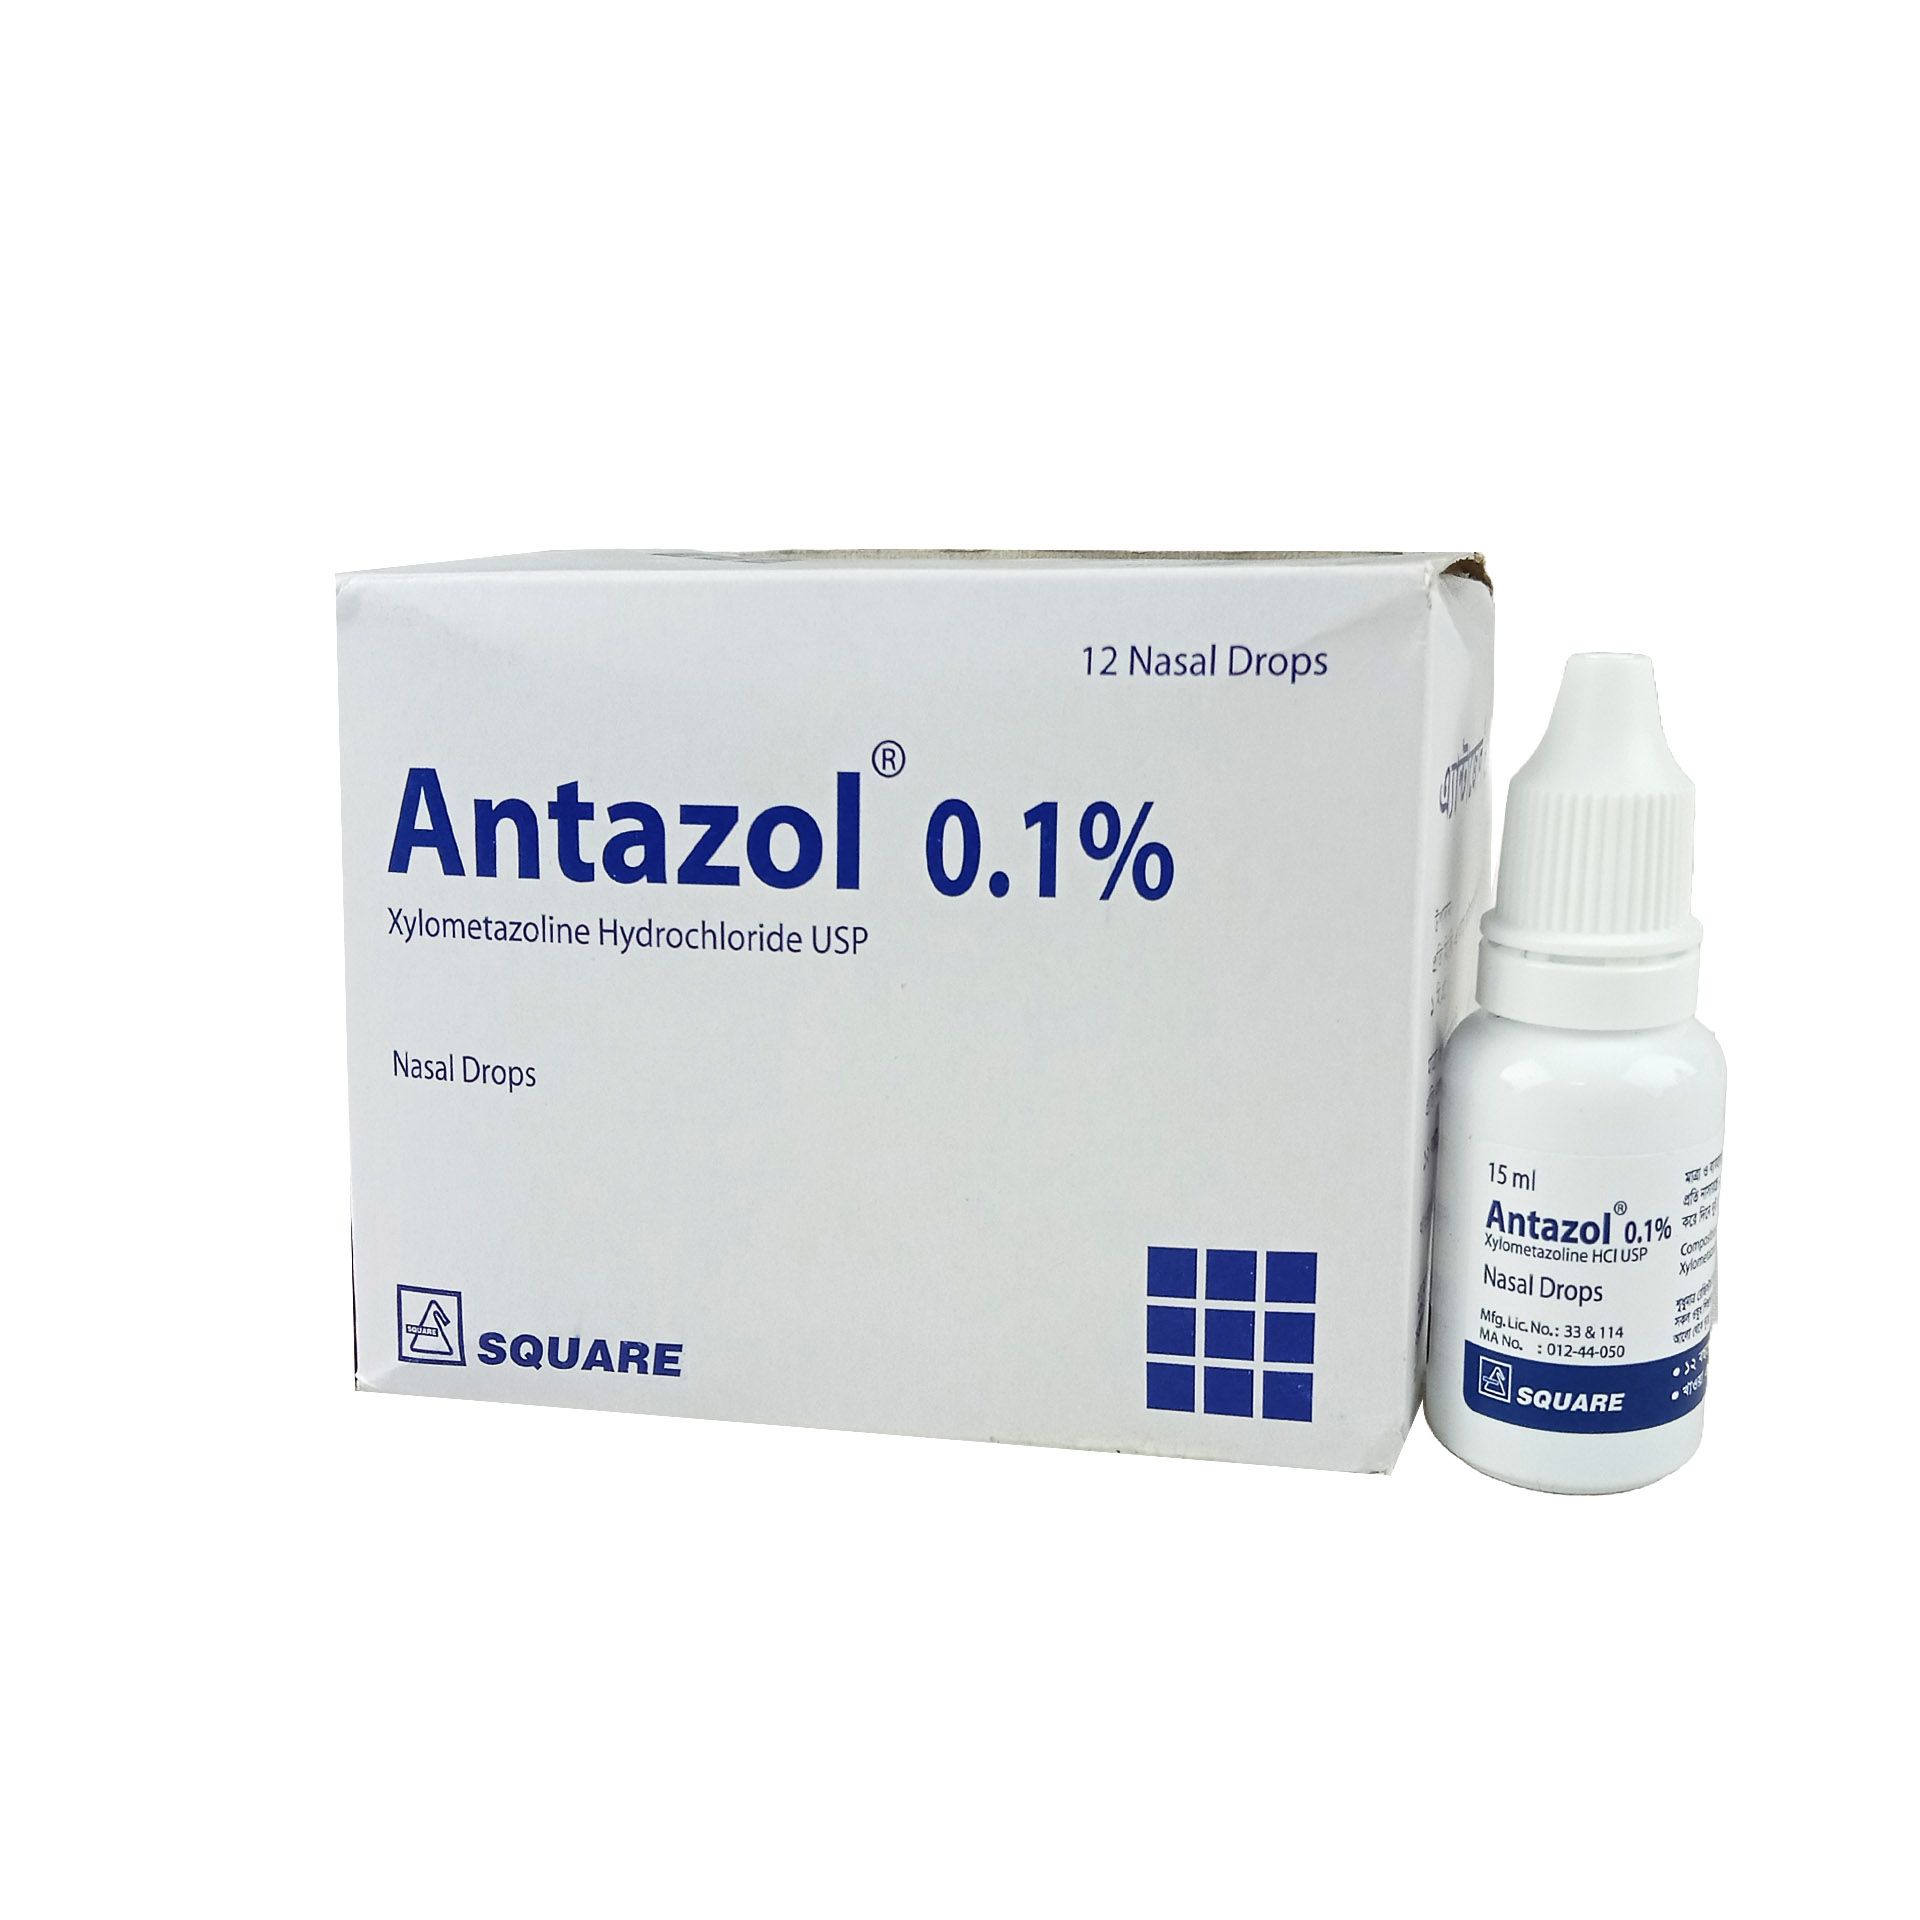 Antazol 0.1% 0.10% Drops